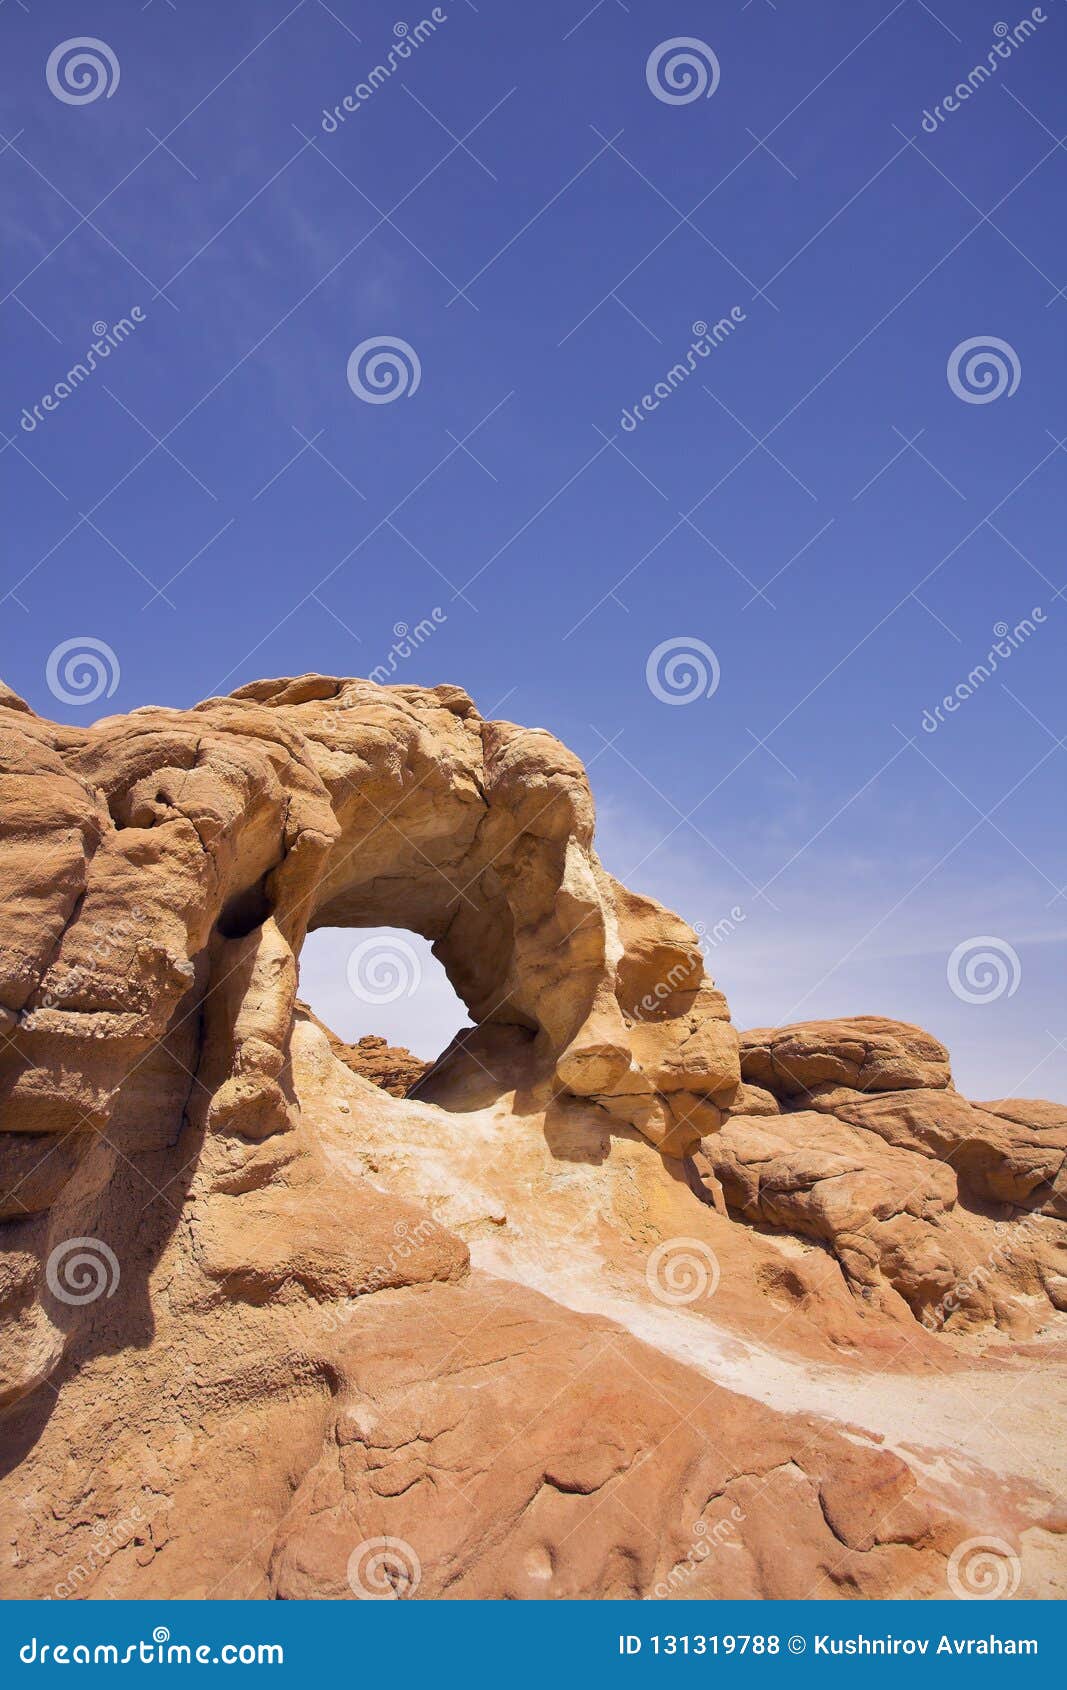 the erosive arch